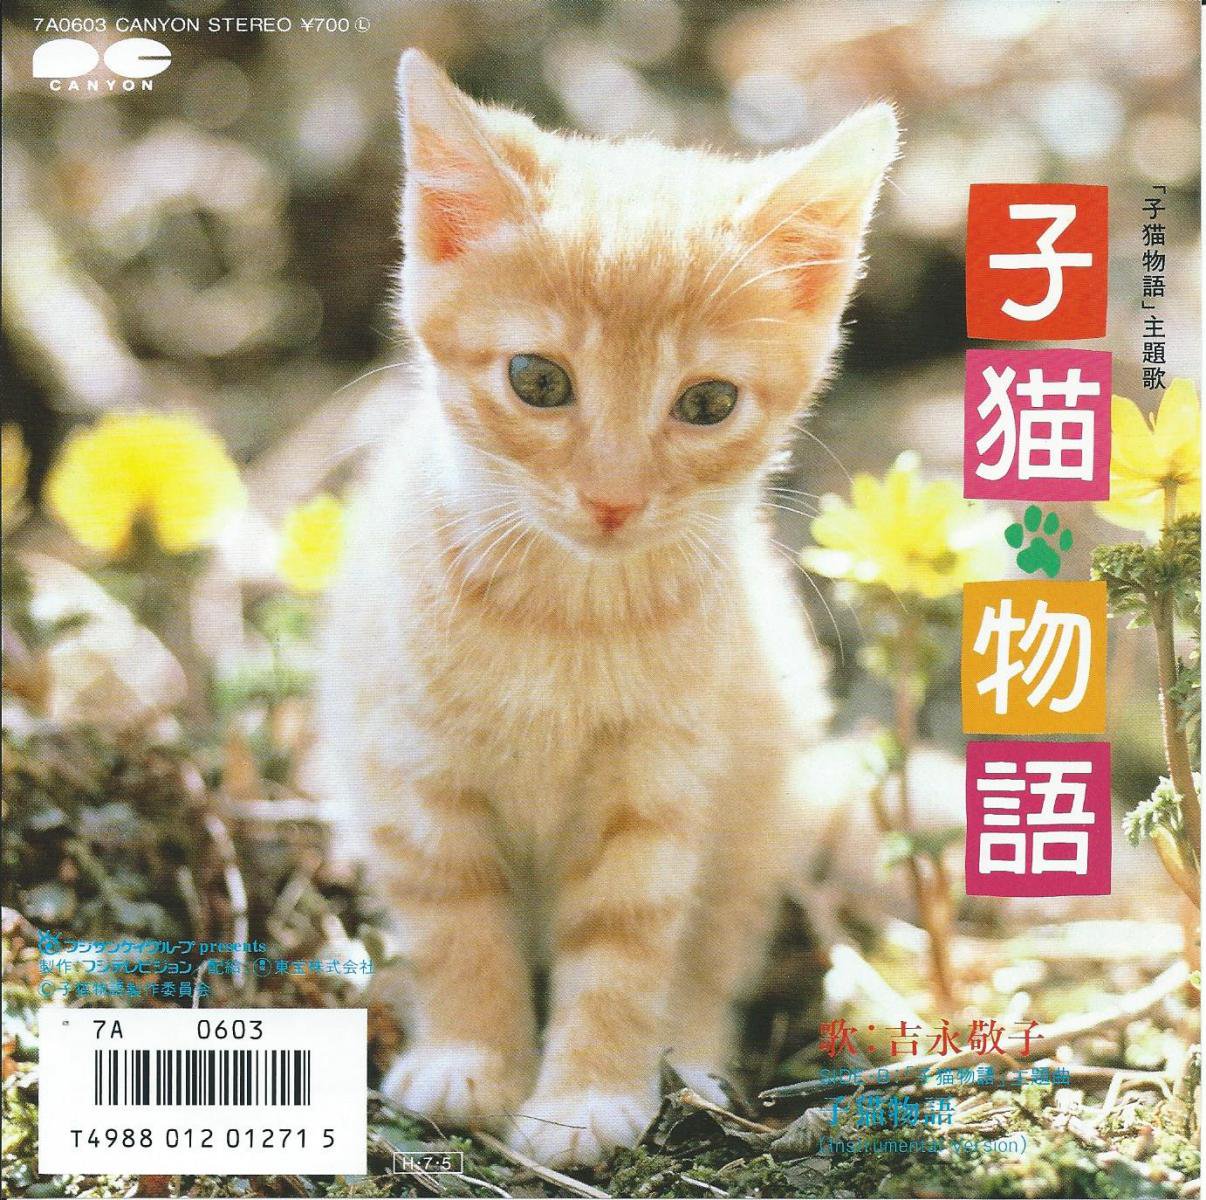 子猫物語('86子猫物語製作委員会)」DVd